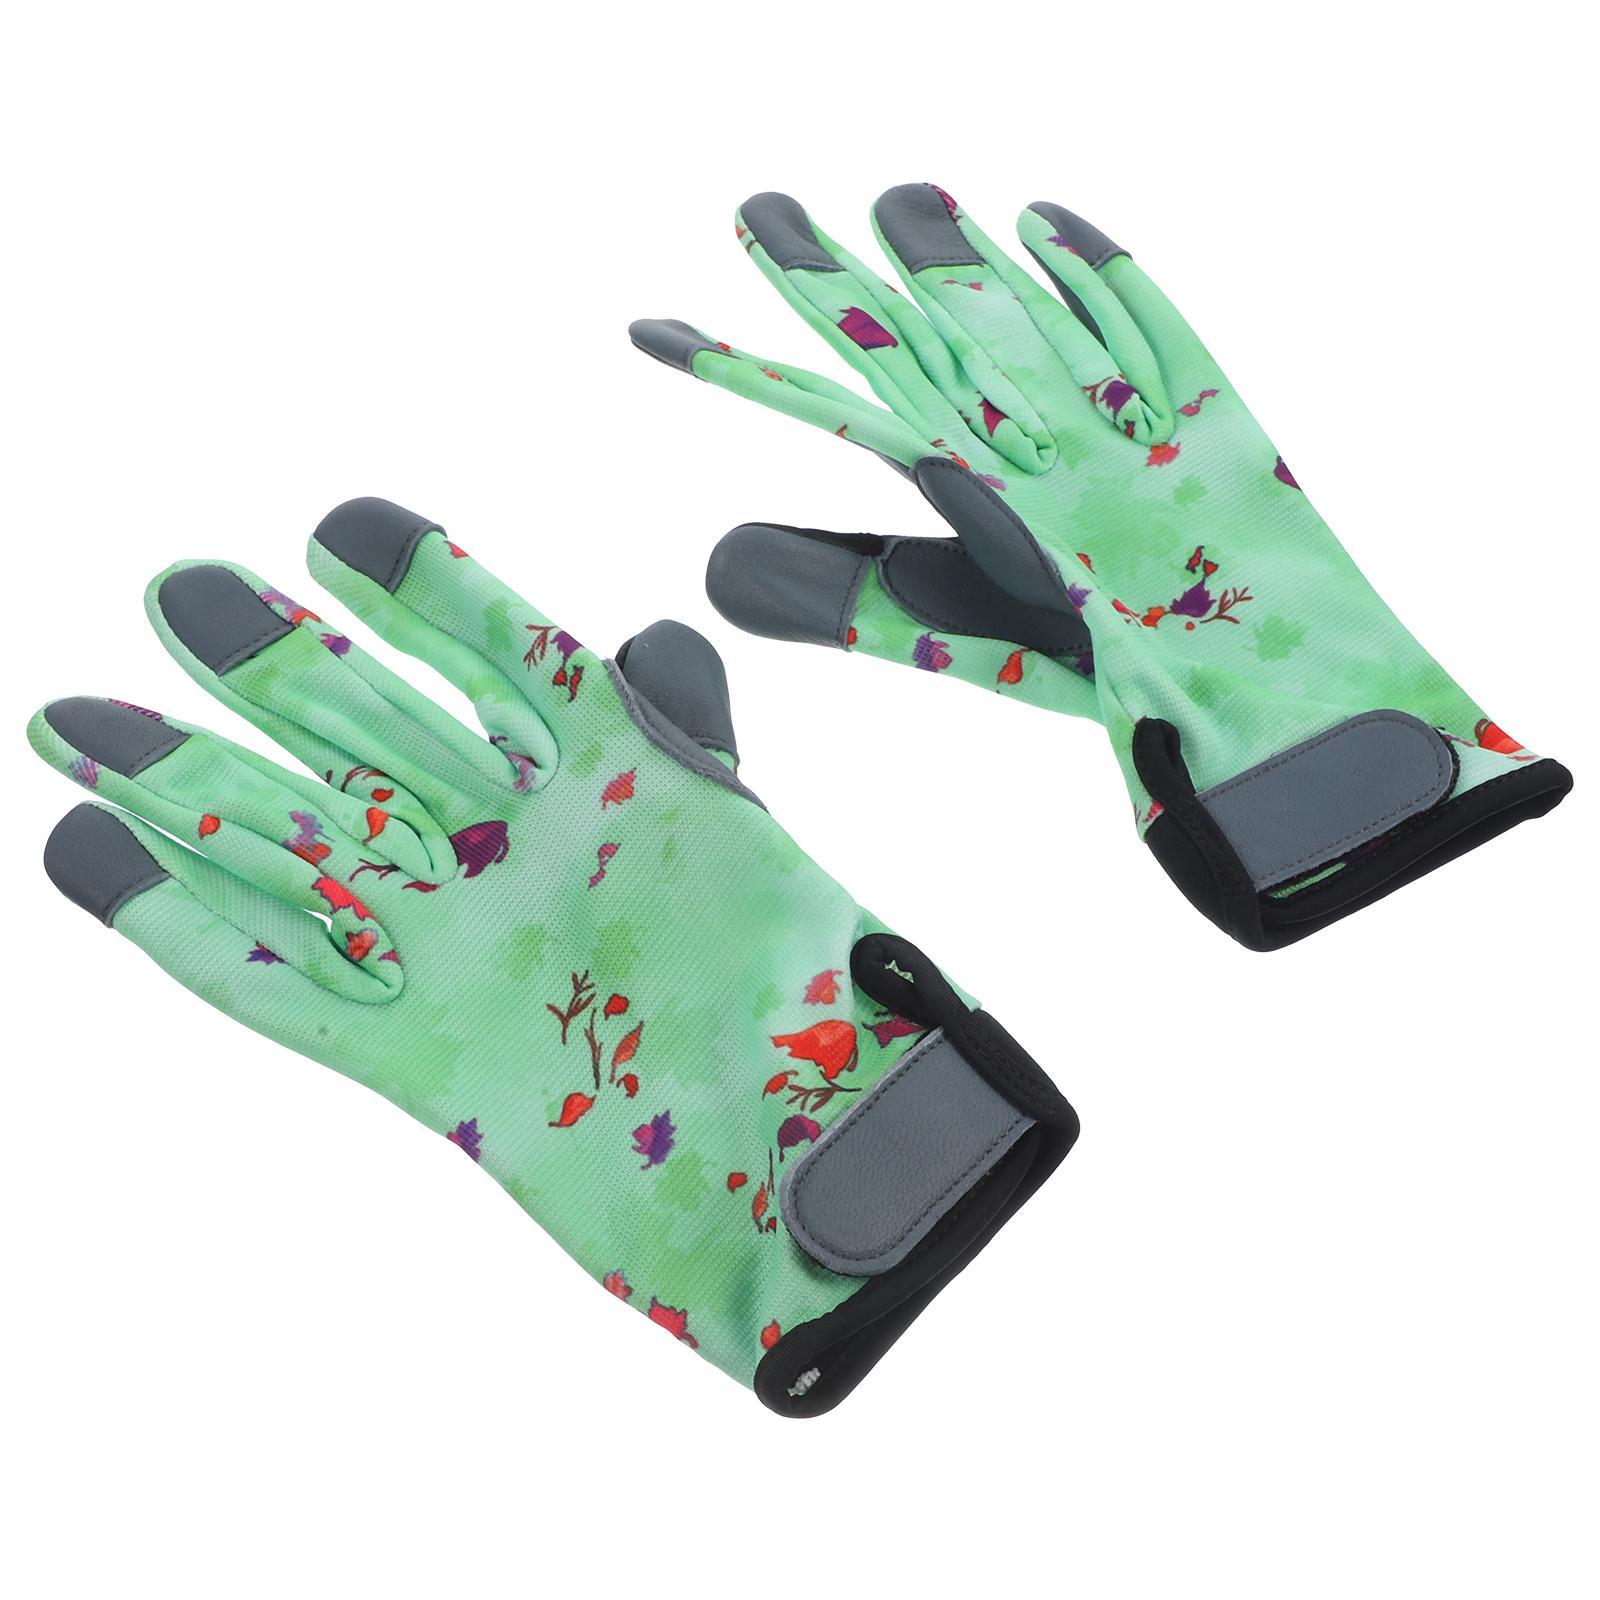 1 Pair of Outdoor Gardening Gloves Anti-slip Safety Gardening Gloves Wear Resistant Glove for Men